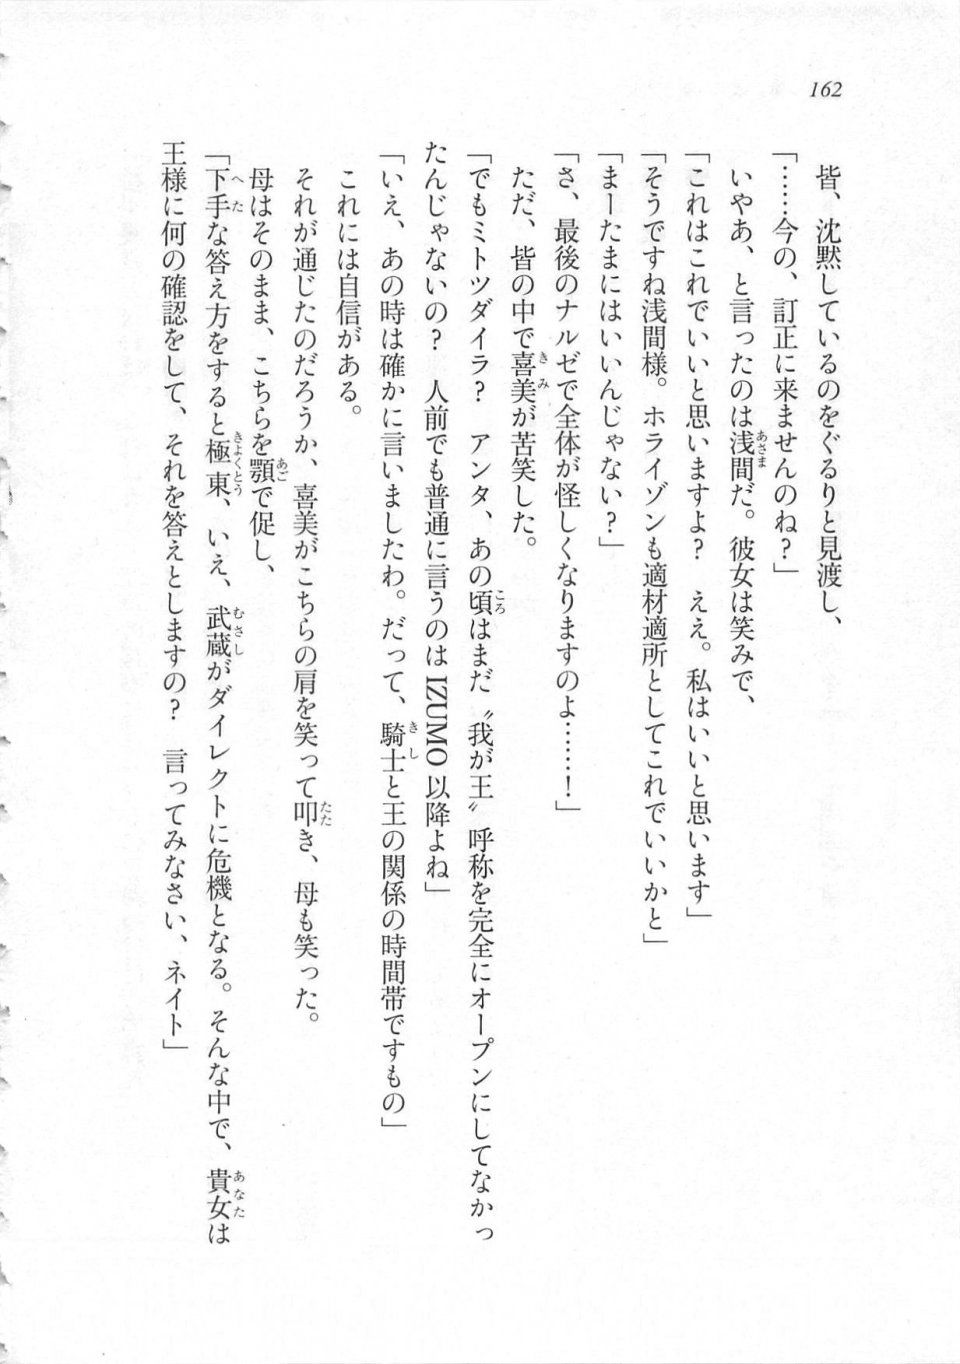 Kyoukai Senjou no Horizon LN Sidestory Vol 3 - Photo #166